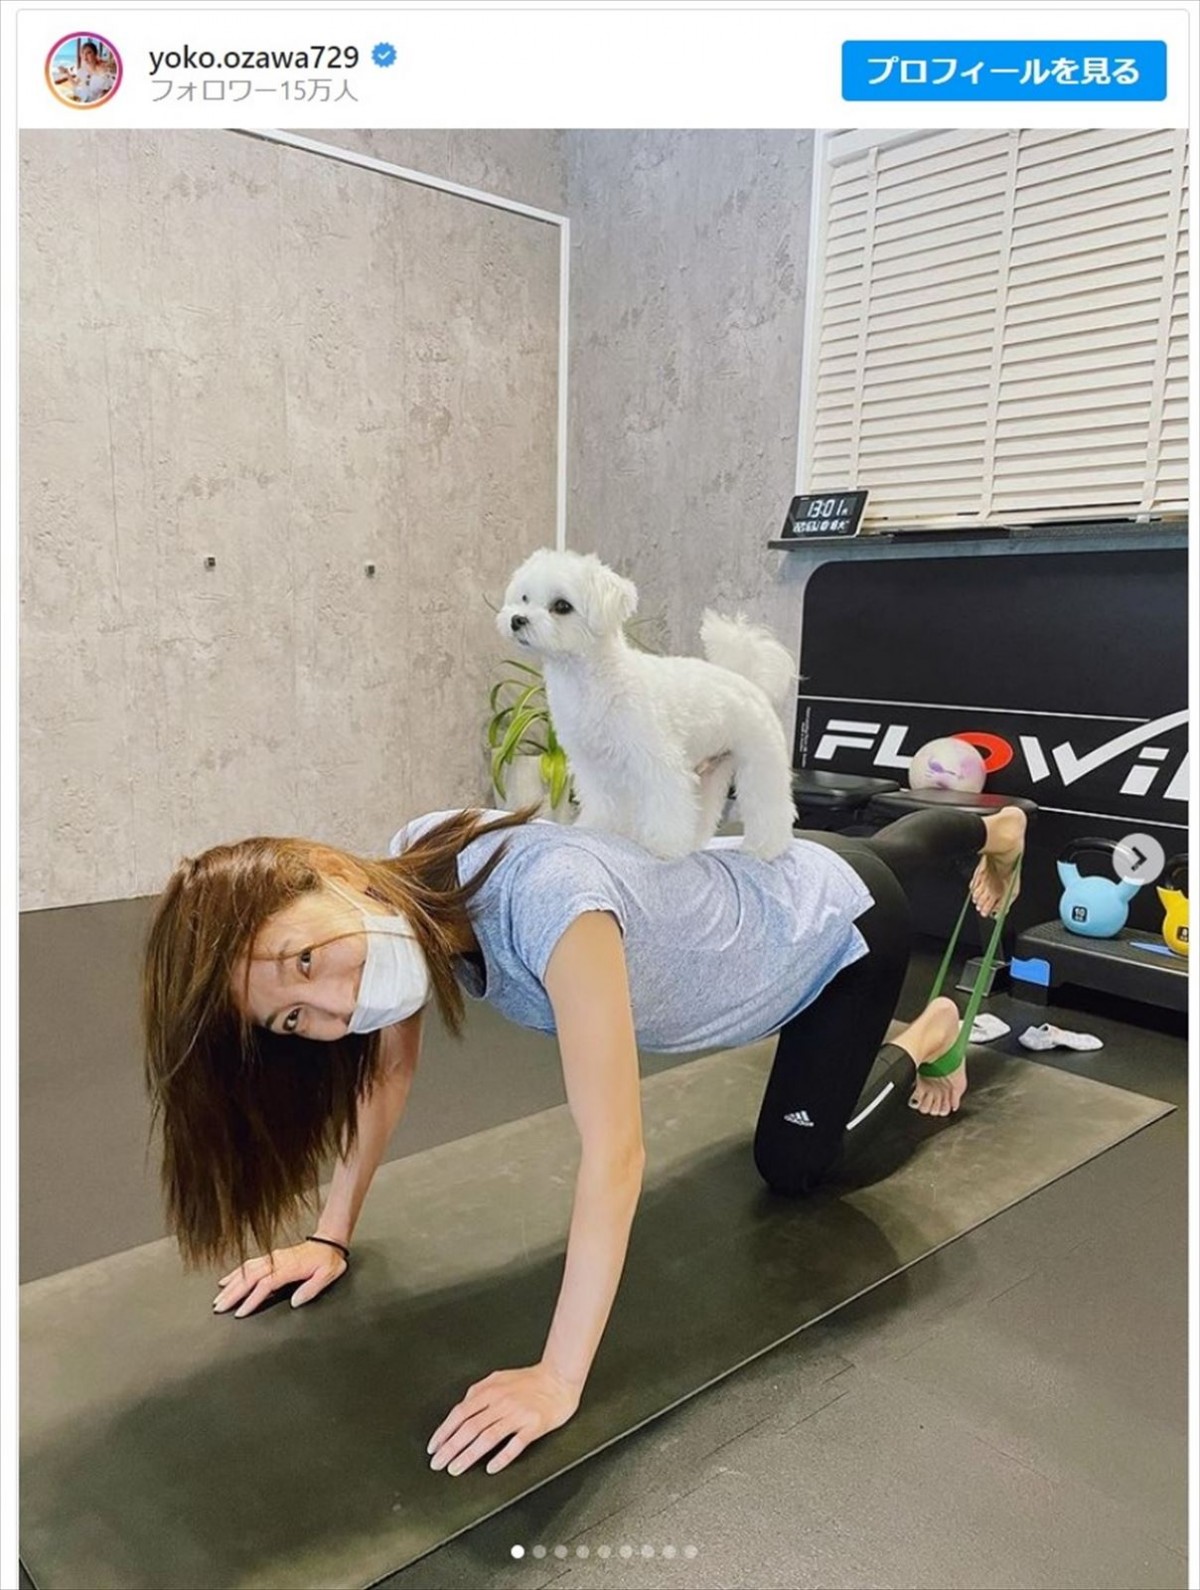 小澤陽子アナ、愛犬で“加重”のトレーニング姿にファン「楽しそう」「カワイイトレーナーさんですね」